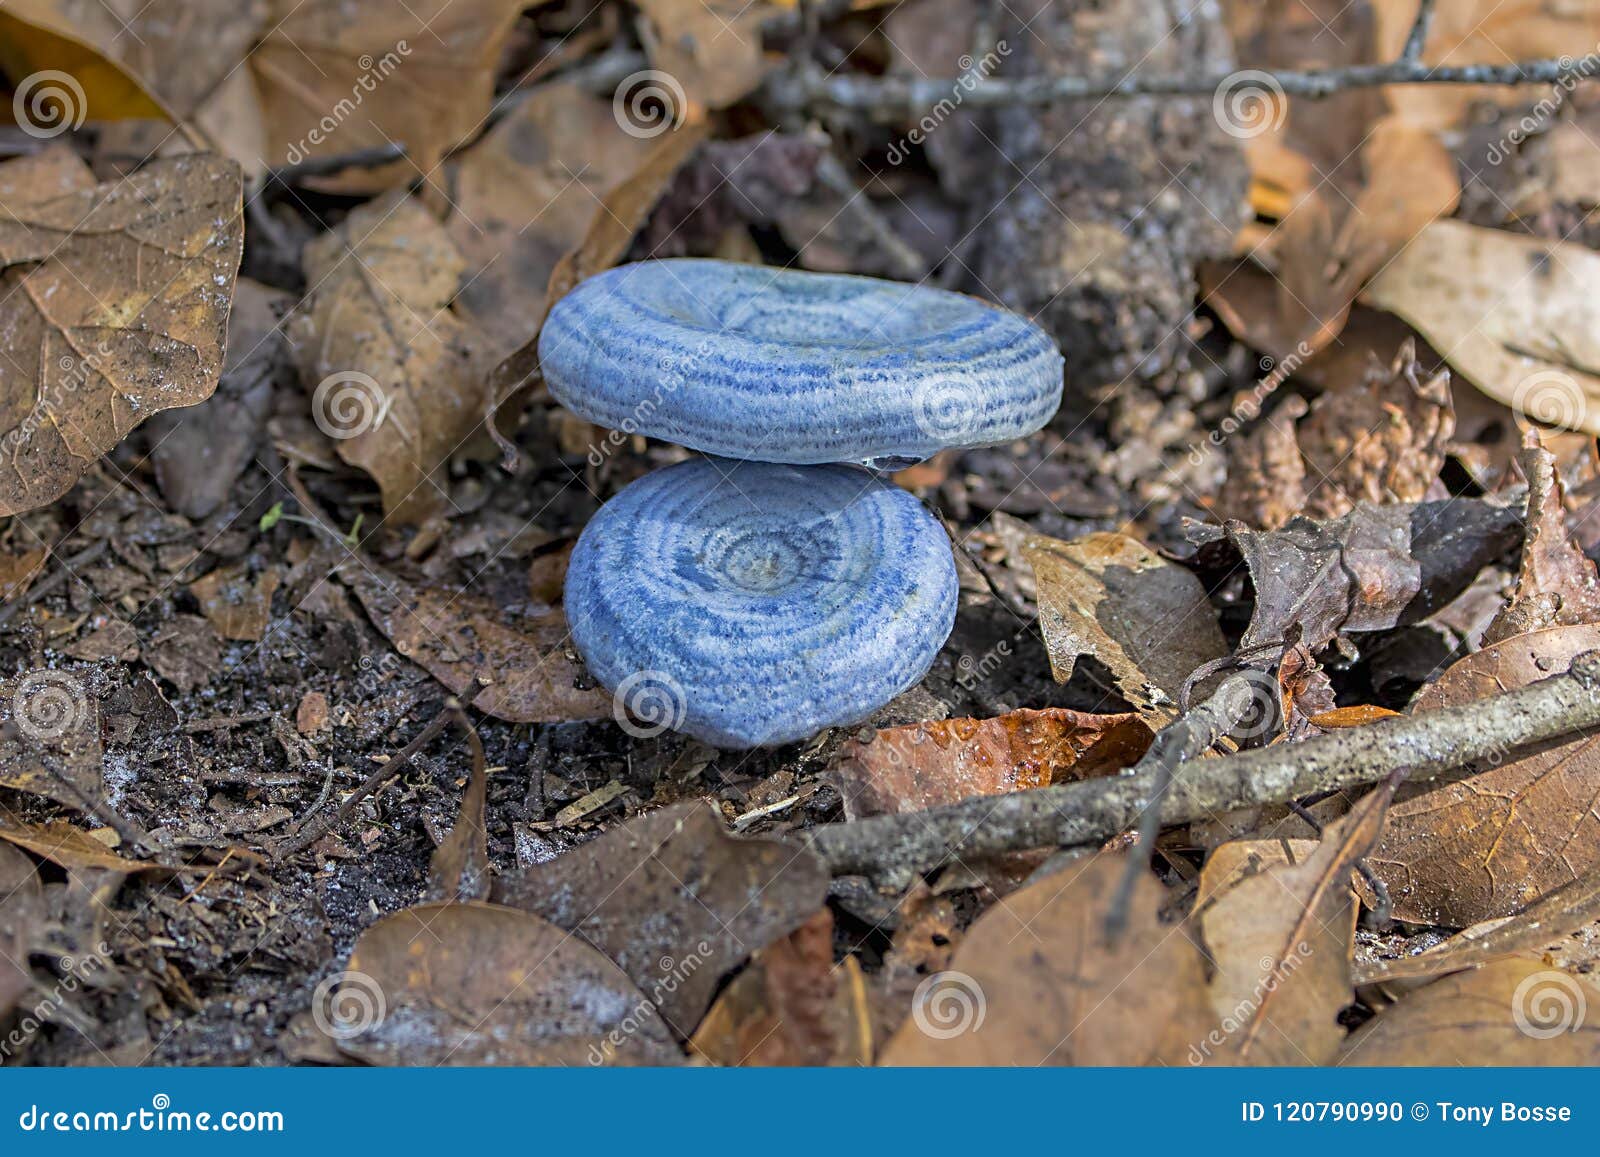 lactarius indigo or blue milk mushrooms